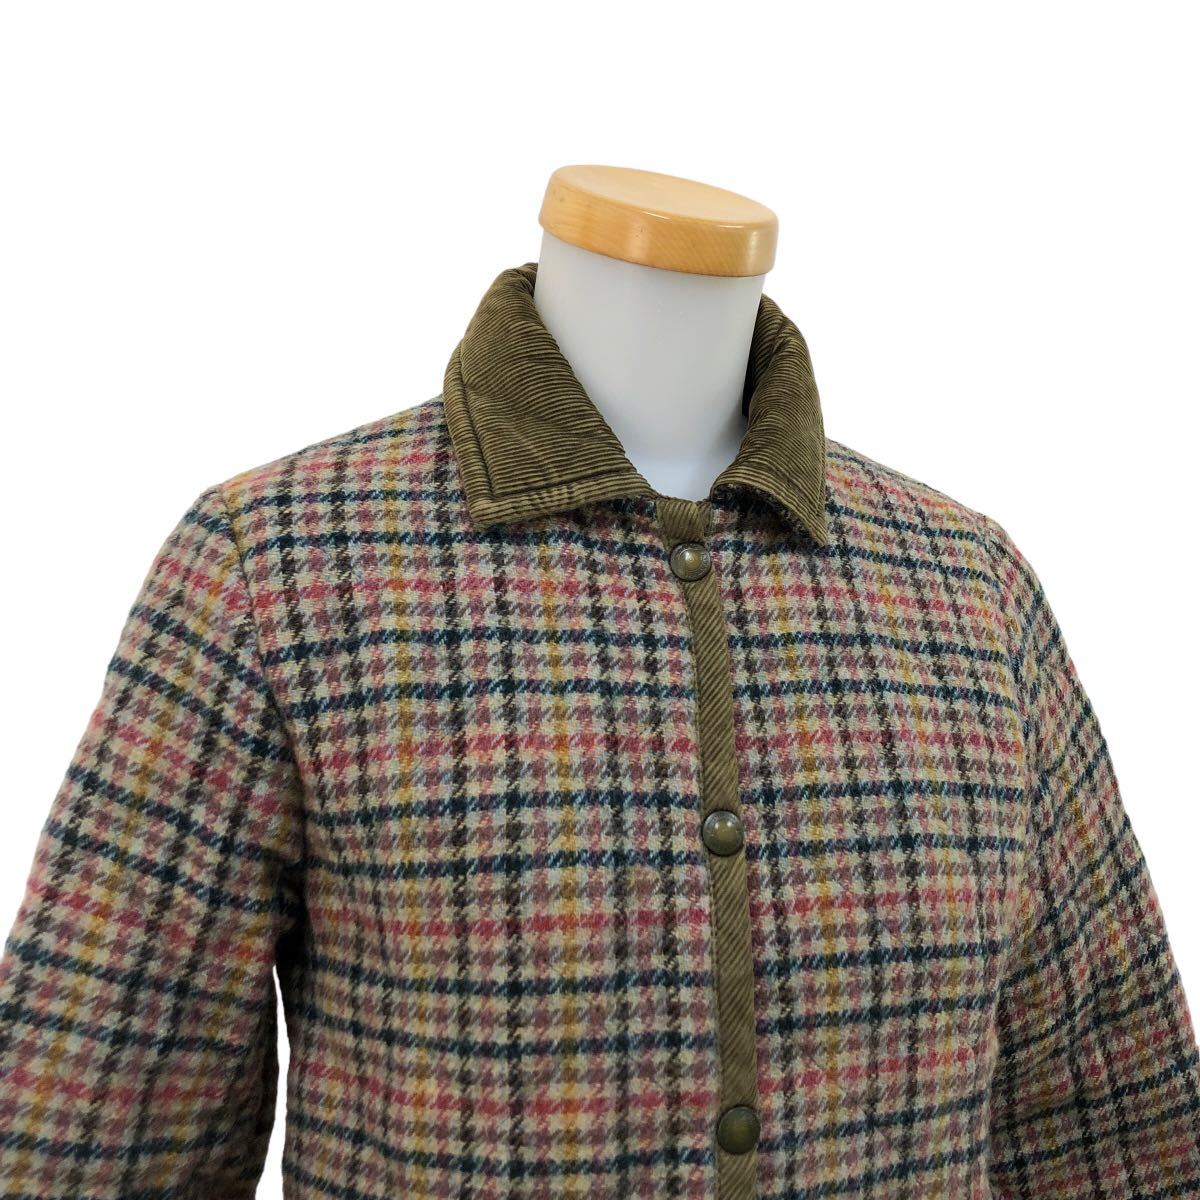 B361 イギリス製 LAVENHAM ラベンハム キルティングジャケット ジャケット アウター 上着 羽織り ウール 100% マルチカラー チェック柄 36_画像2